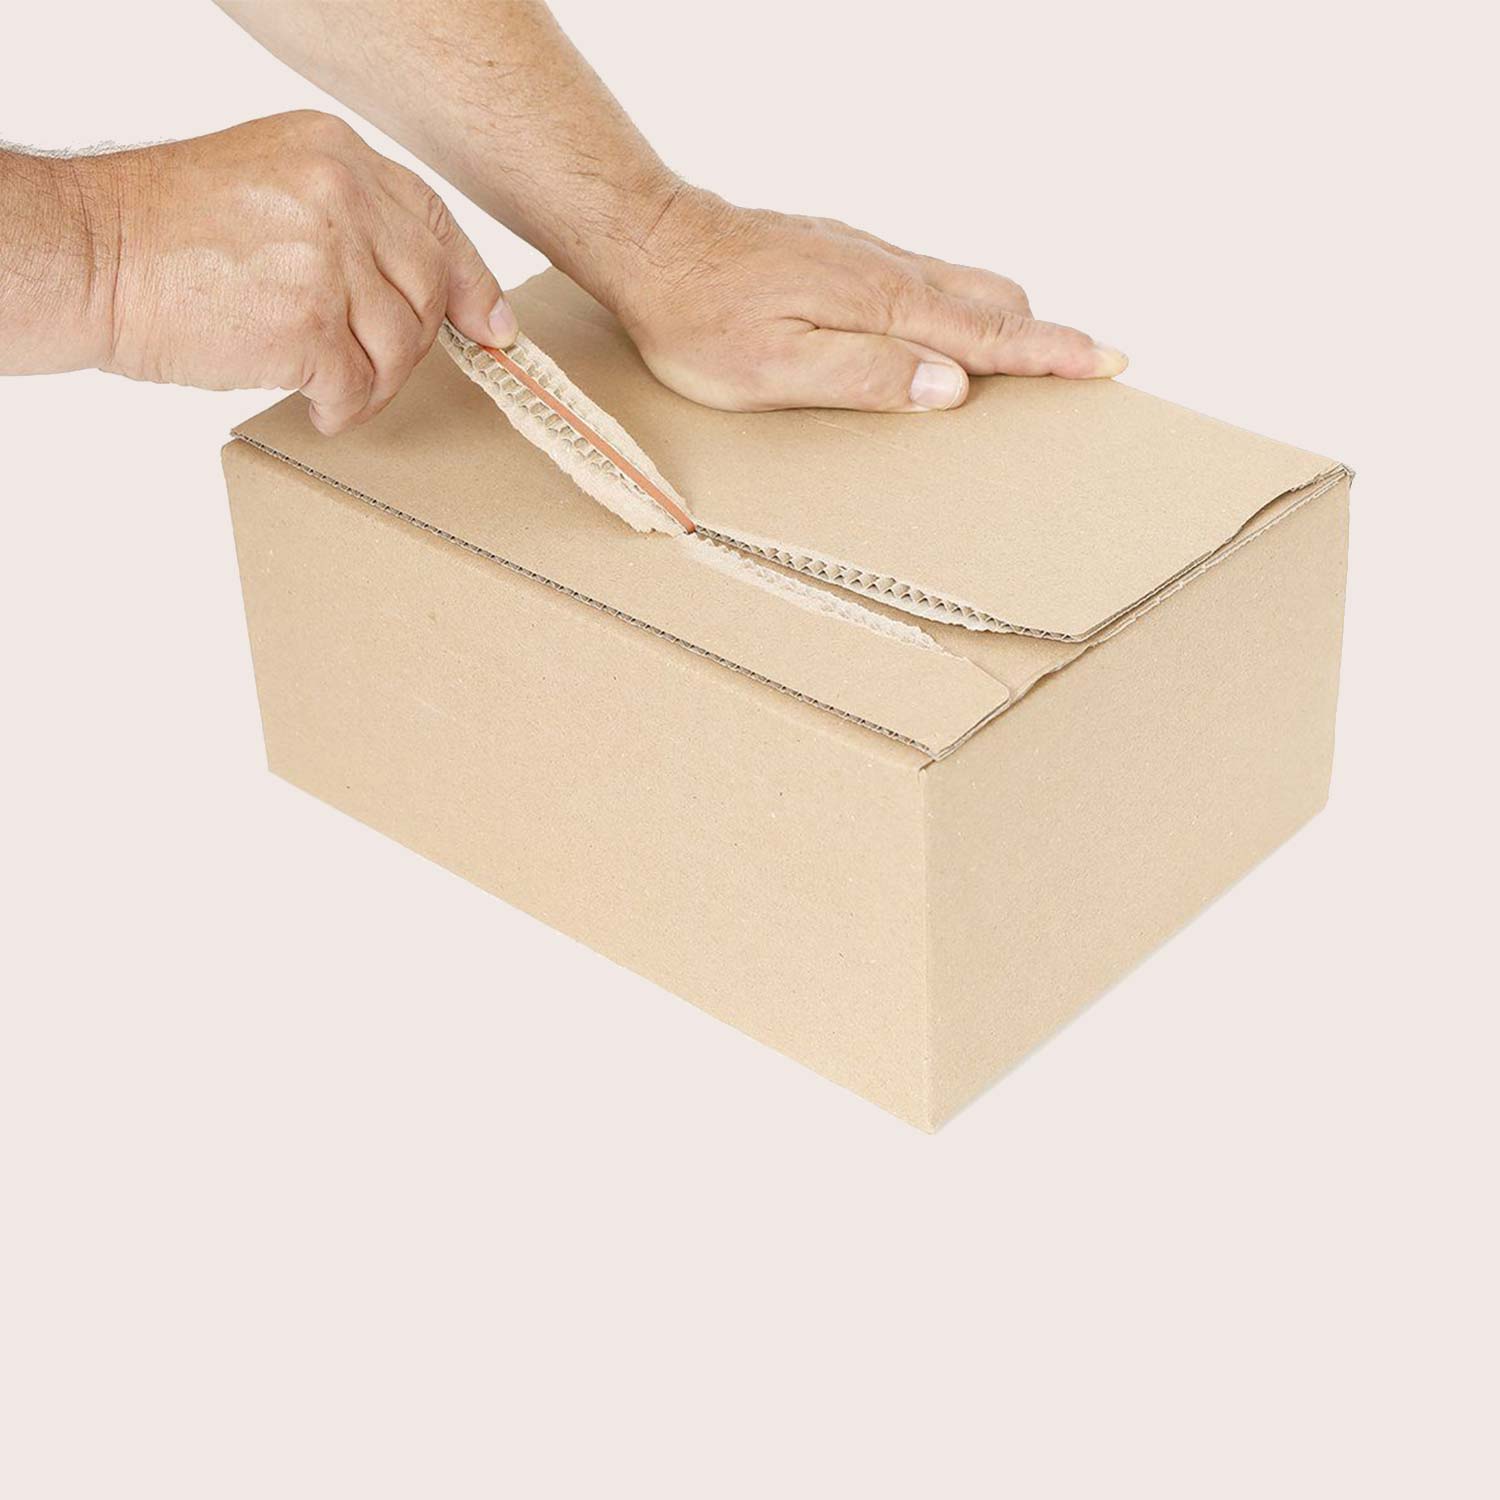 Deschiderea cutiilor de carton cu fund cu autoblocare